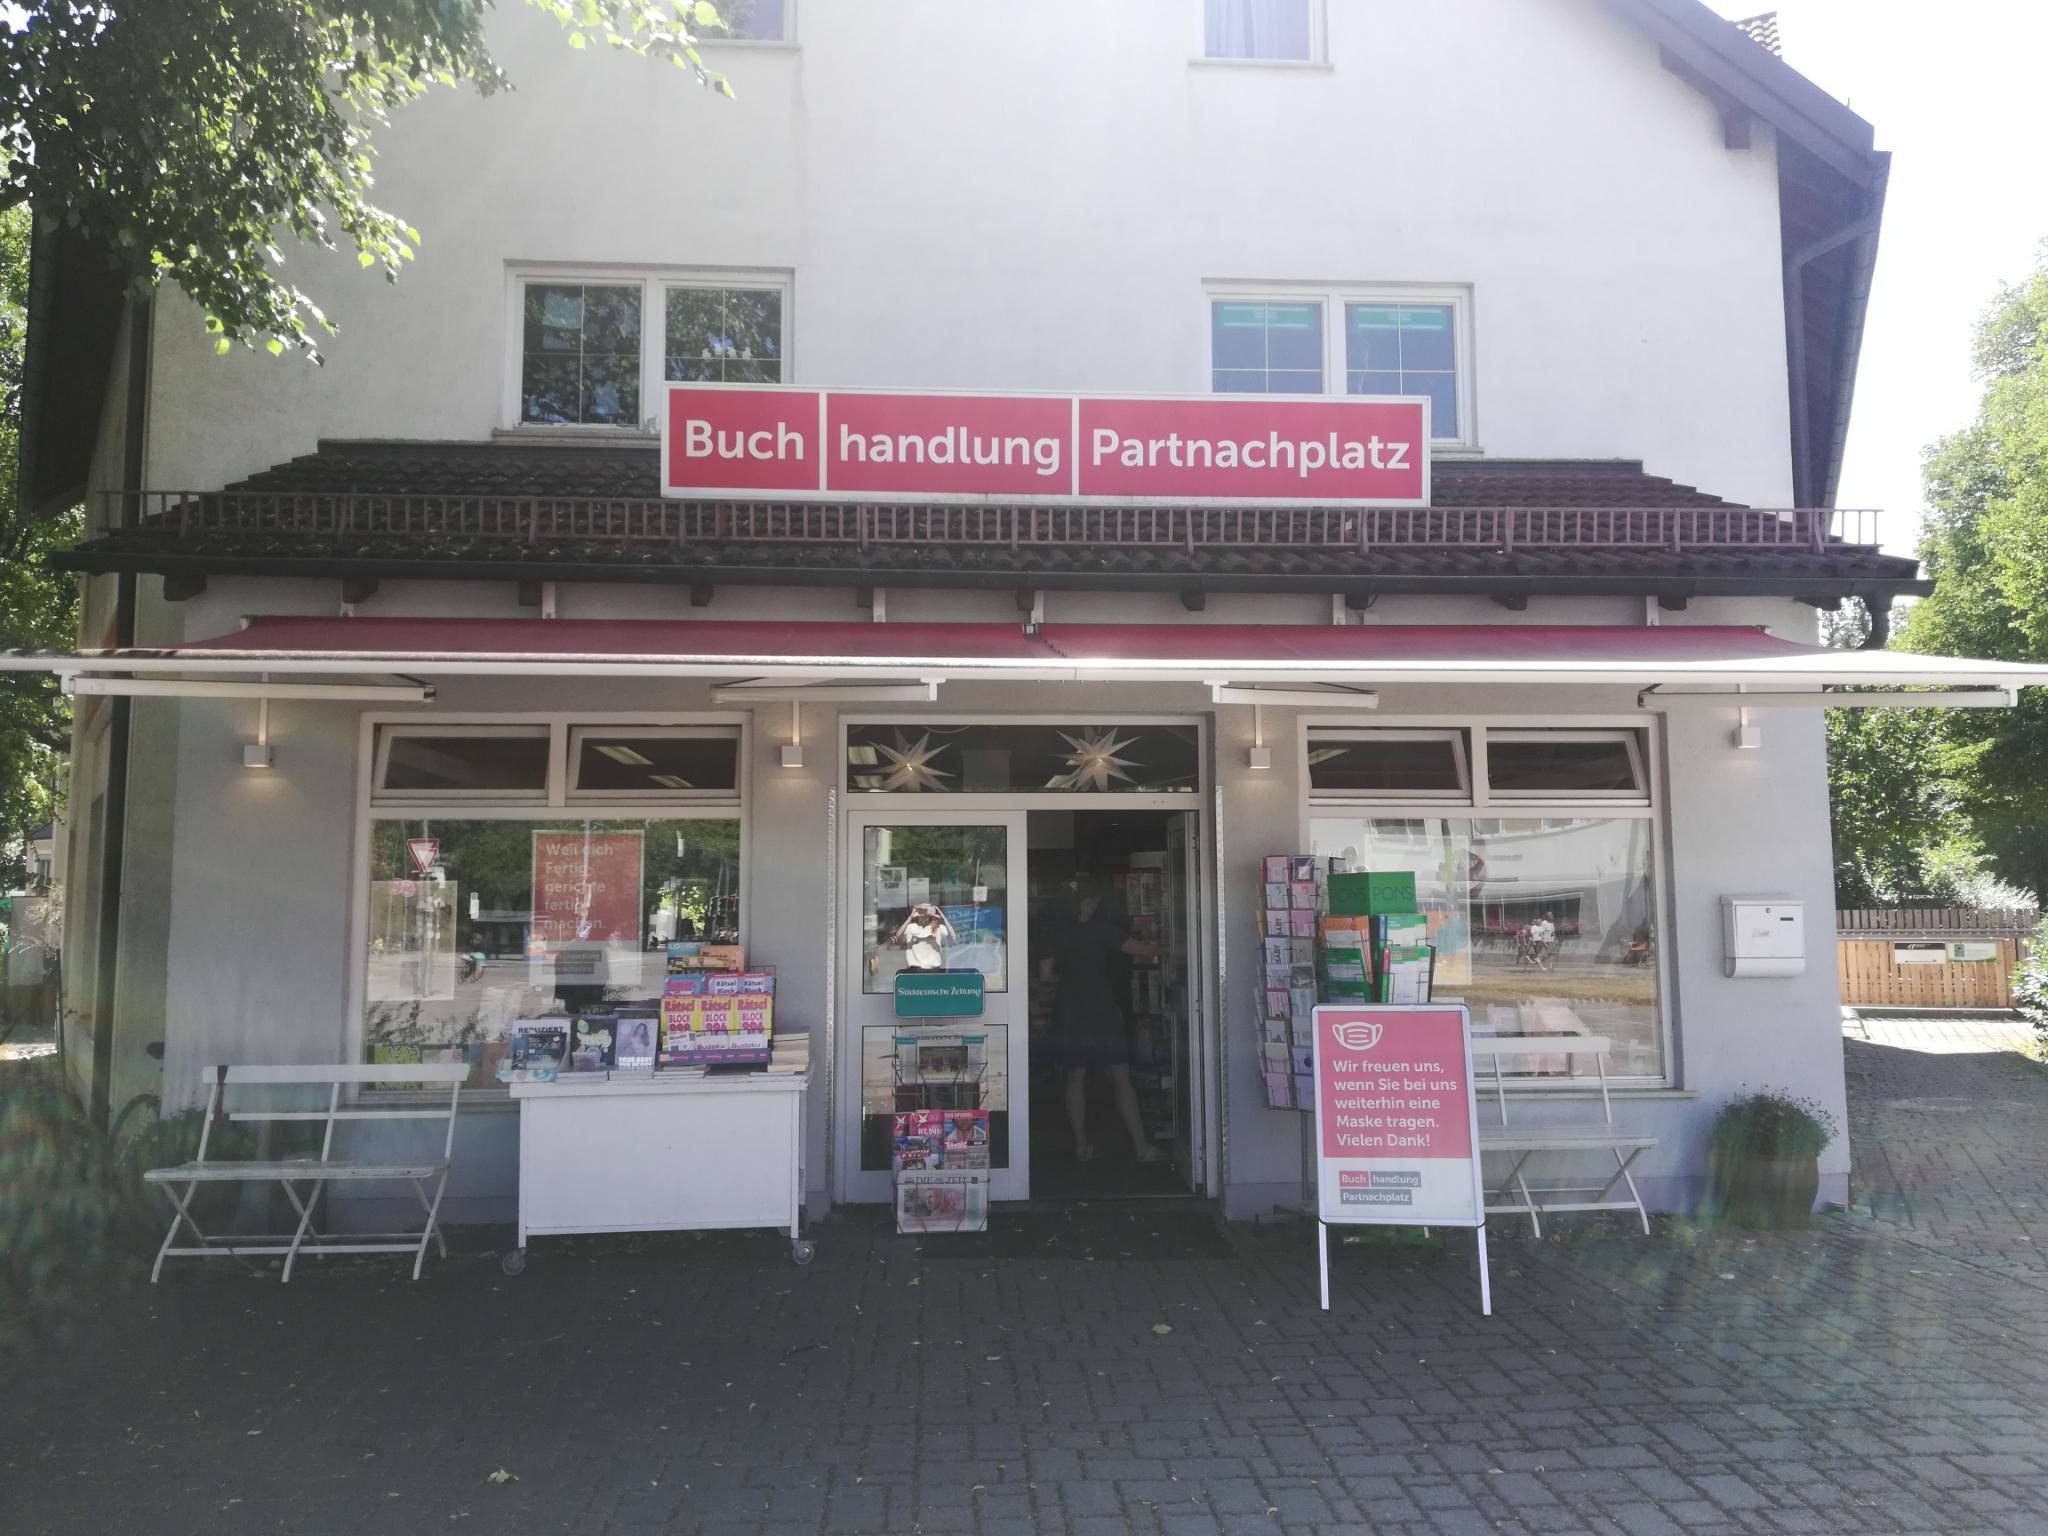 You are currently viewing Buchhandlung am Partnachplatz